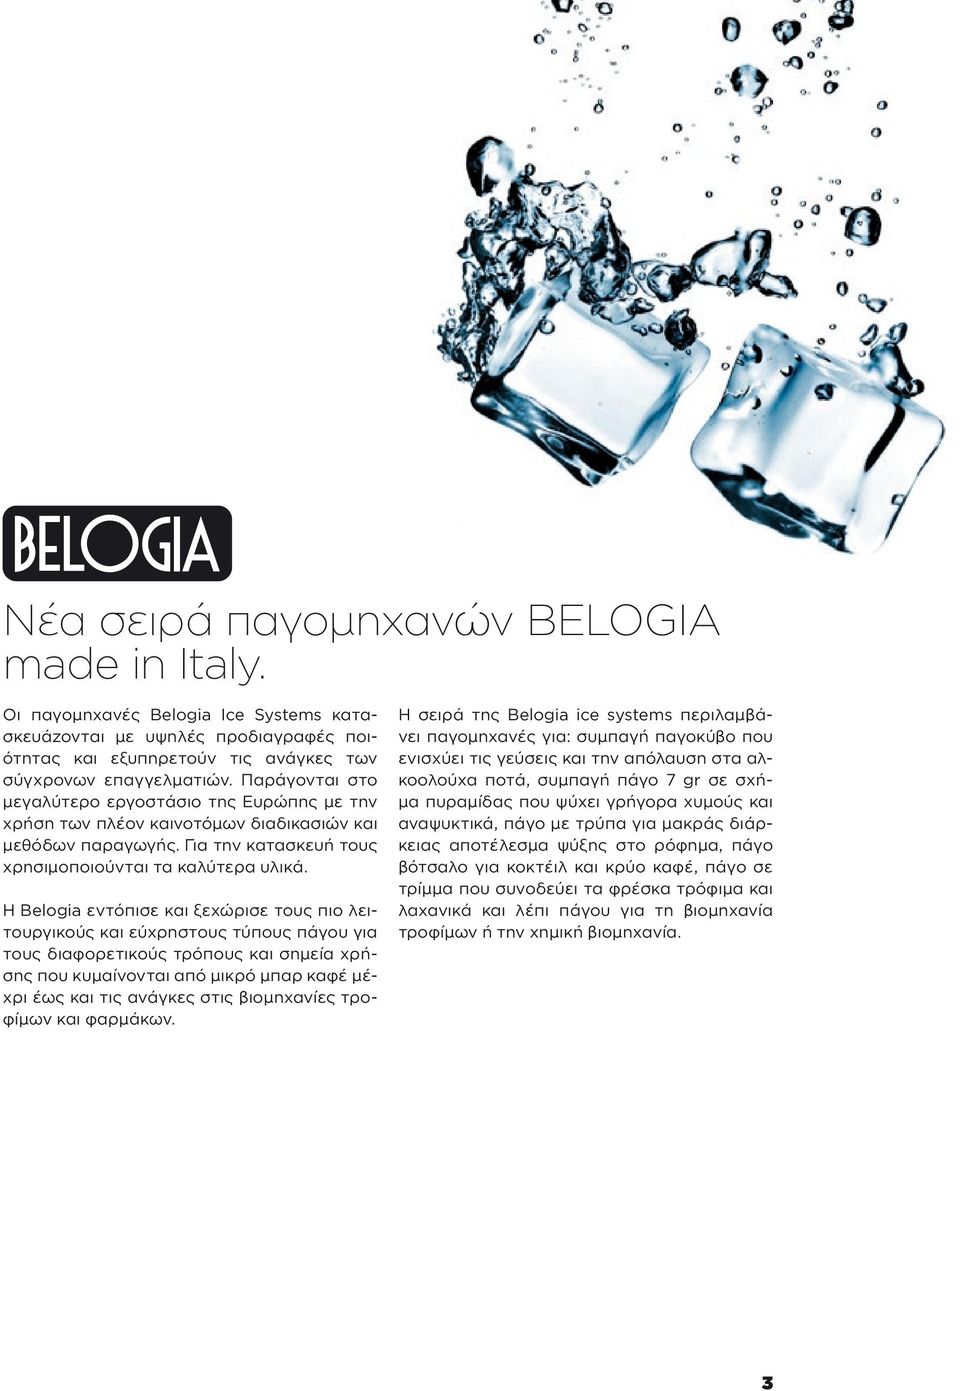 Η Belogia εντόπισε και ξεχώρισε τους πιο λειτουργικούς και εύχρηστους τύπους πάγου για τους διαφορετικούς τρόπους και σημεία χρήσης που κυμαίνονται από μικρό μπαρ καφέ μέχρι έως και τις ανάγκες στις